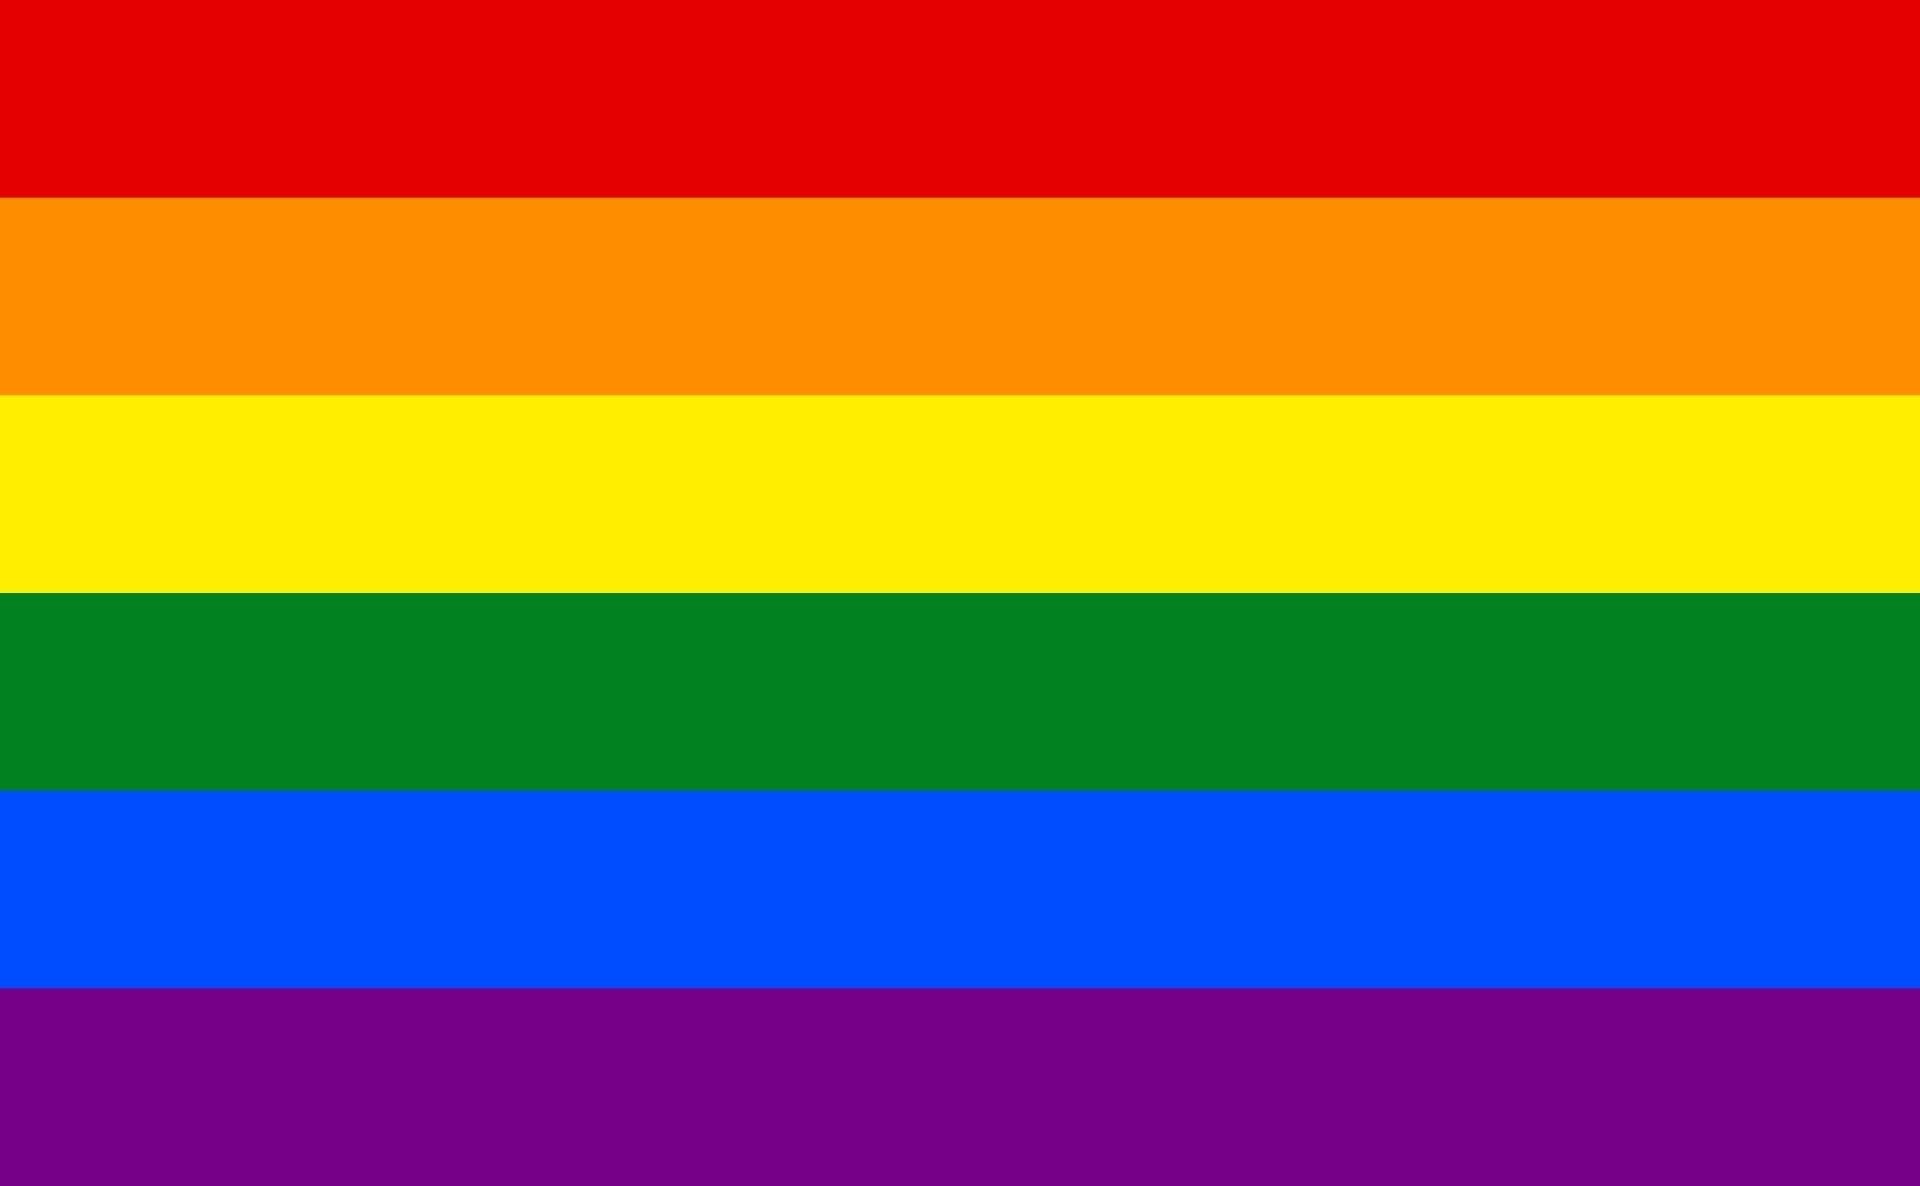 The rainbow pride flag.